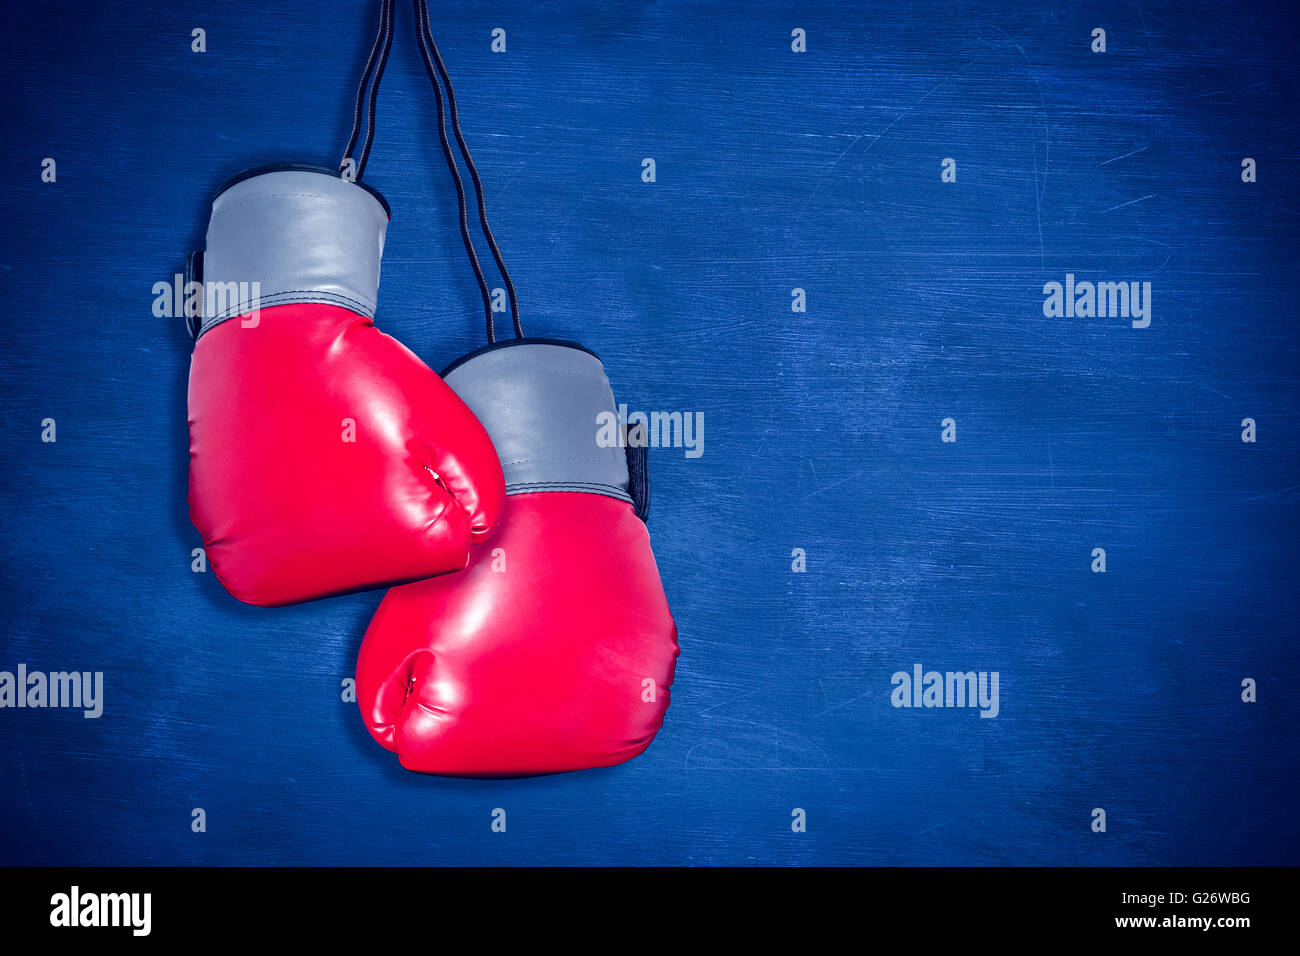 Imagen compuesta de los guantes de boxeo adjunta a fondo blanco. Foto de stock